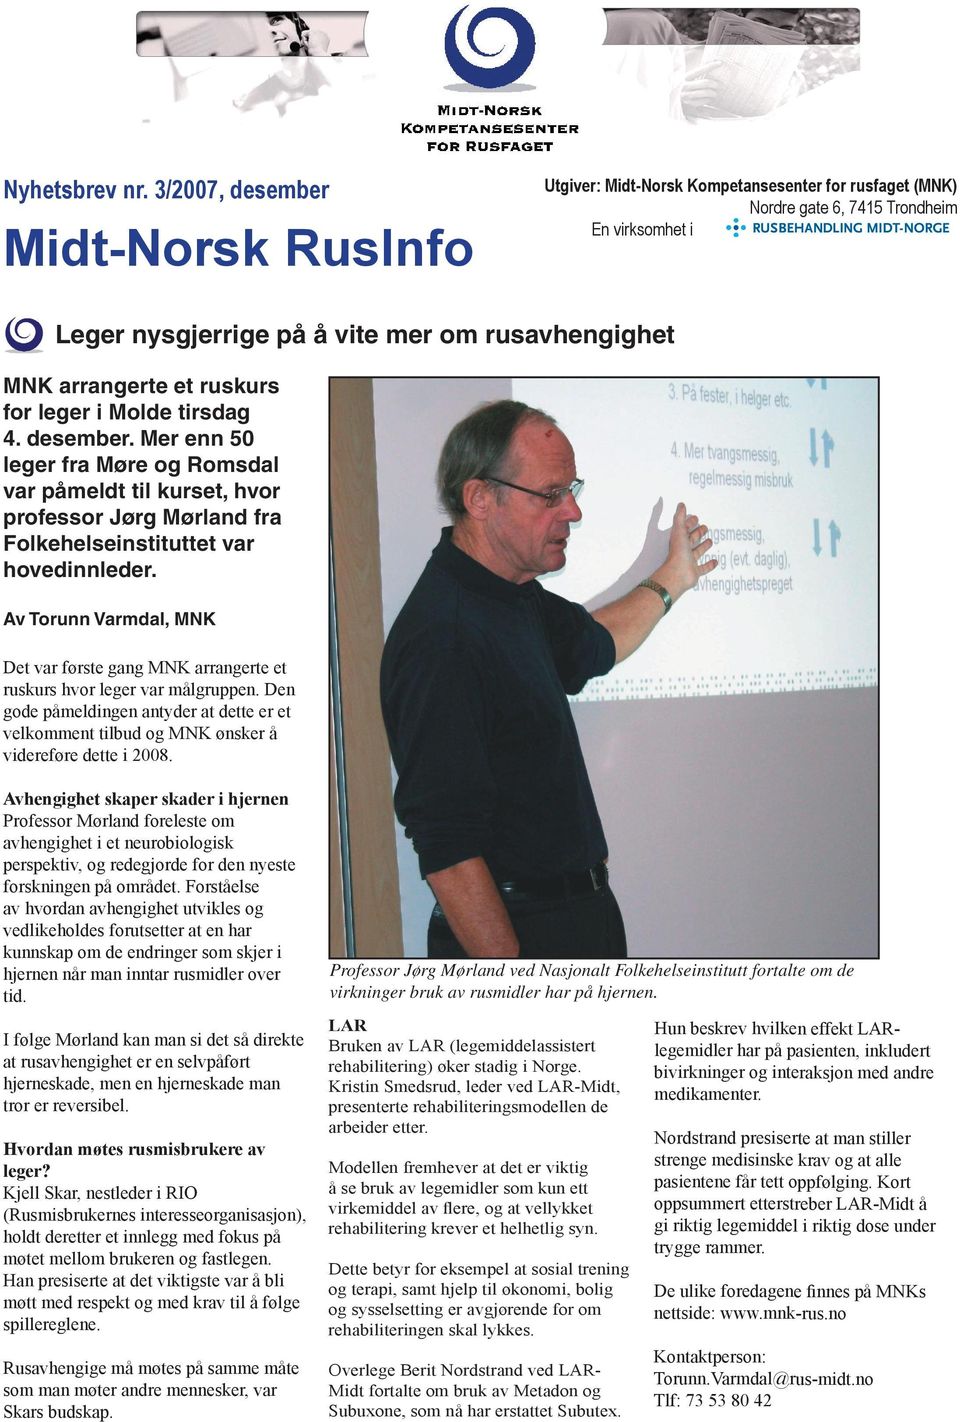 arrangerte et ruskurs for leger i Molde tirsdag 4. desember. Mer enn 50 leger fra Møre og Romsdal var påmeldt til kurset, hvor professor Jørg Mørland fra Folkehelseinstituttet var hovedinnleder.